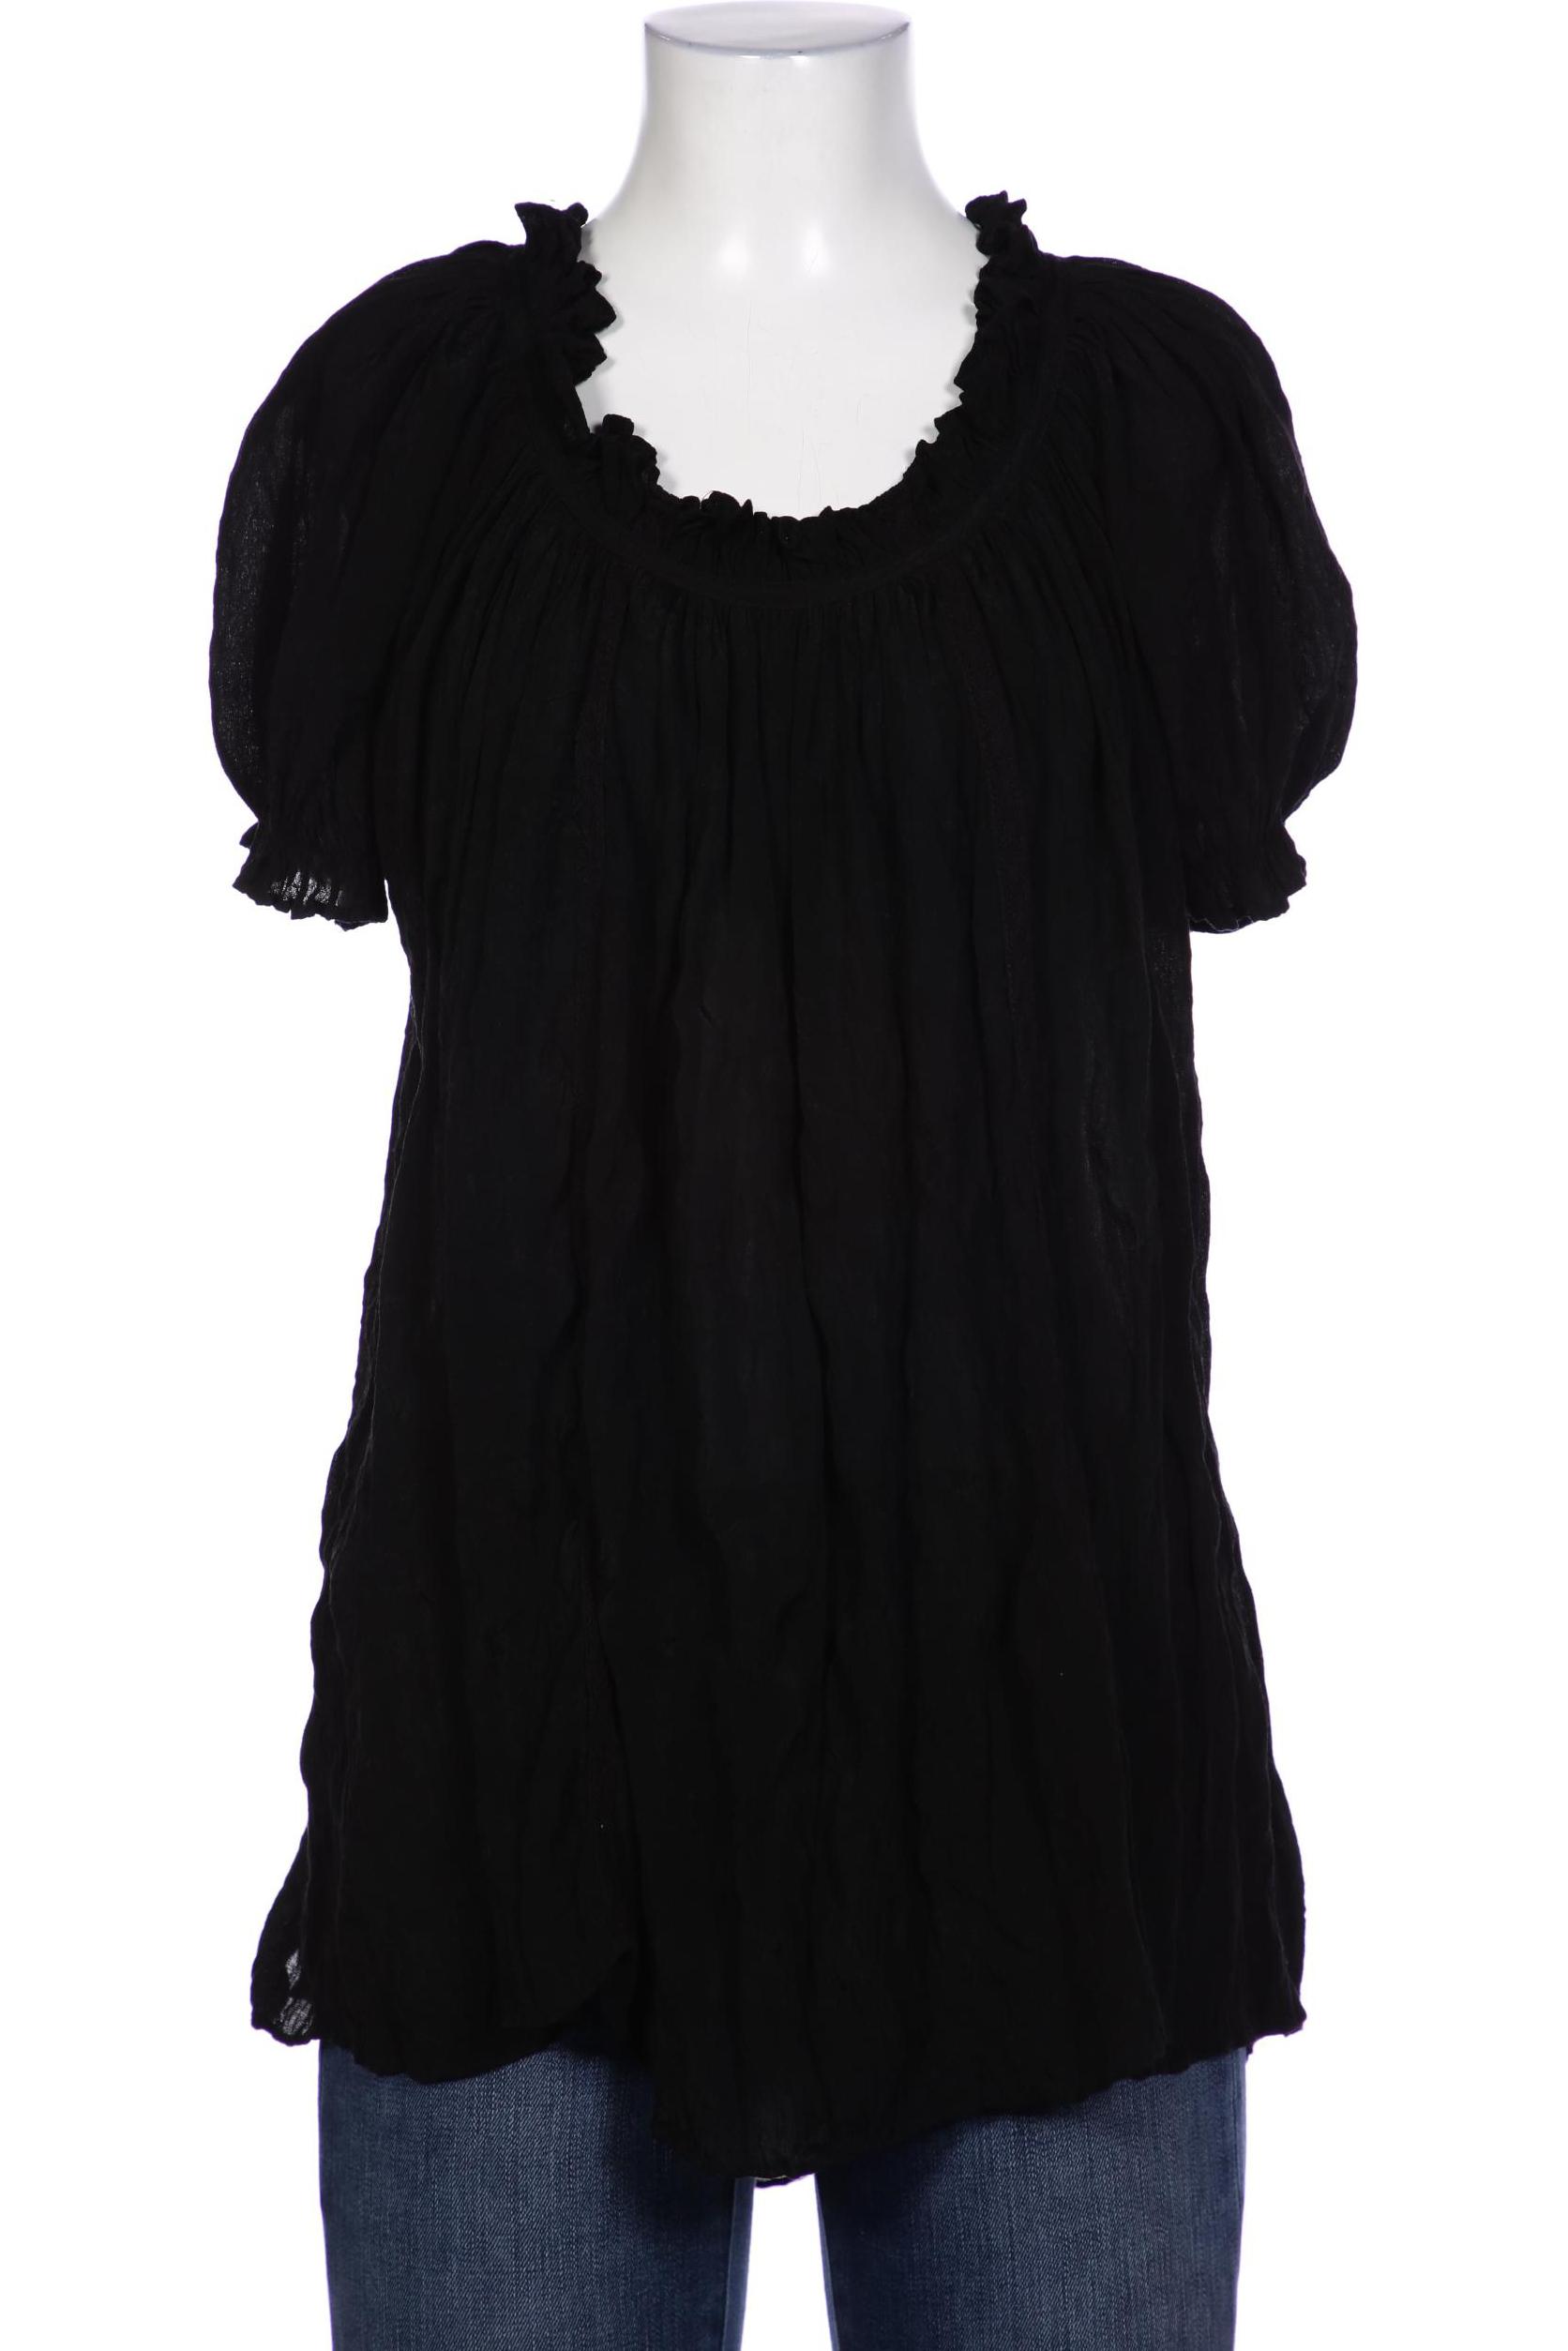 Saint Tropez Damen Bluse, schwarz, Gr. 36 von SAINT TROPEZ